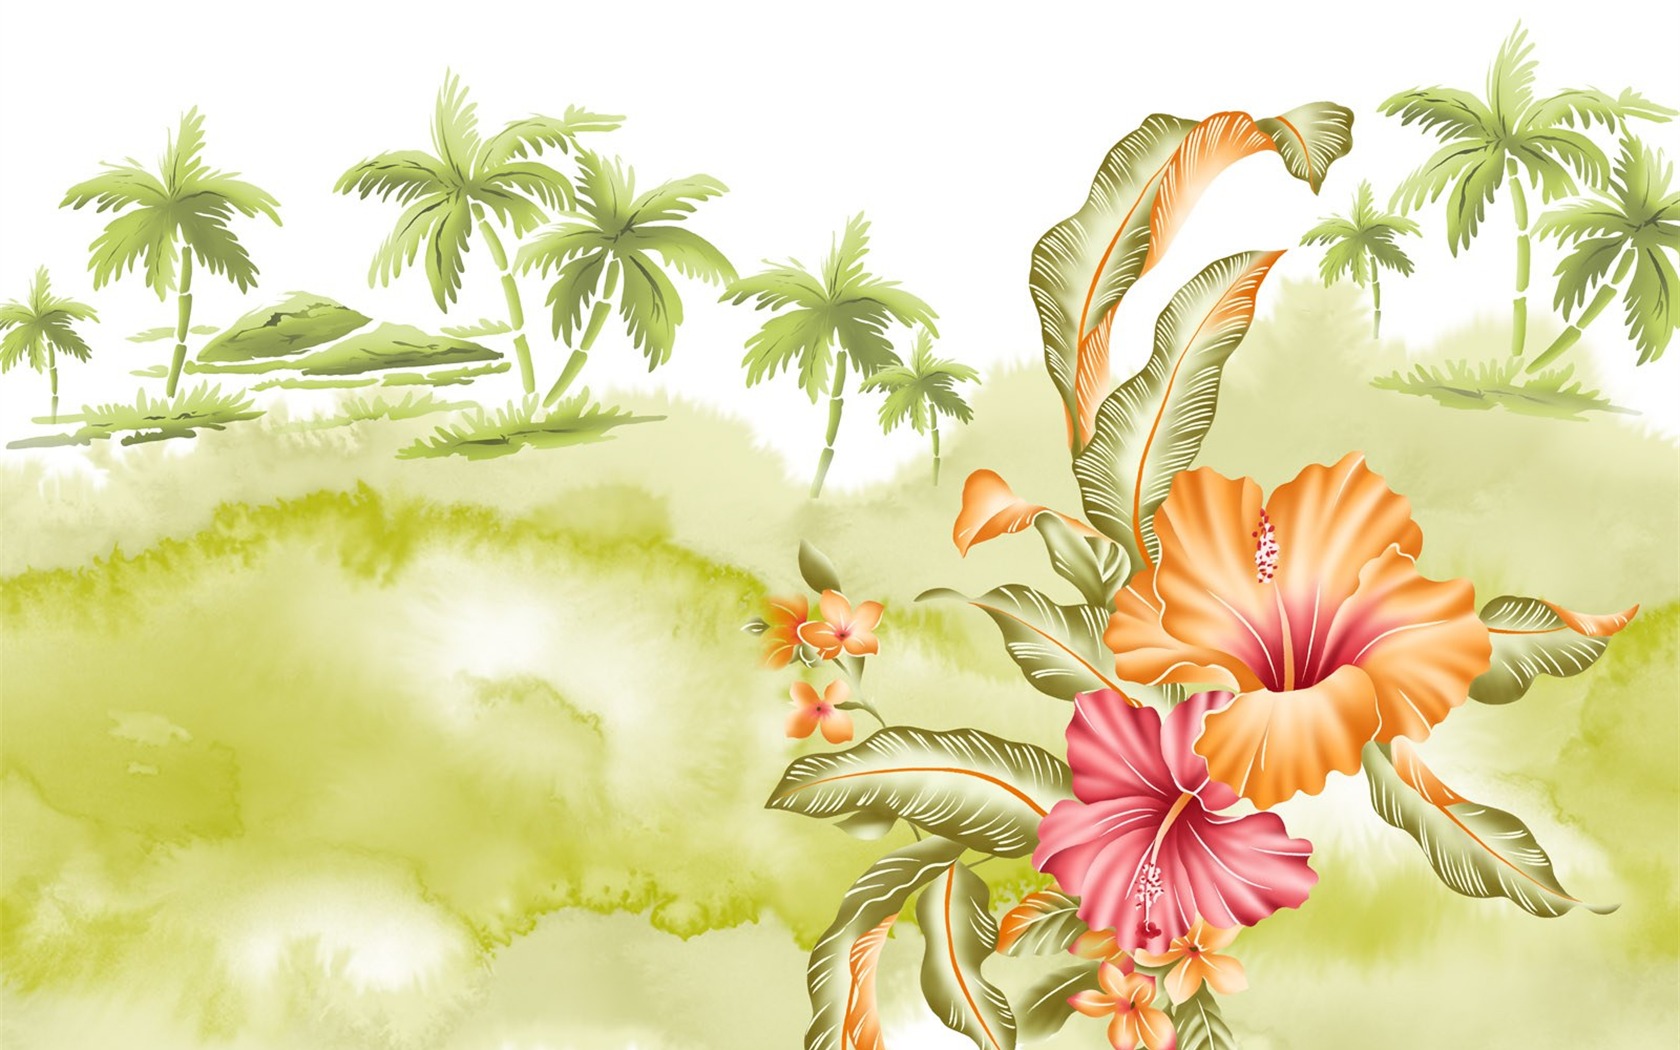 Floral wallpaper illustration design #21 - 1680x1050